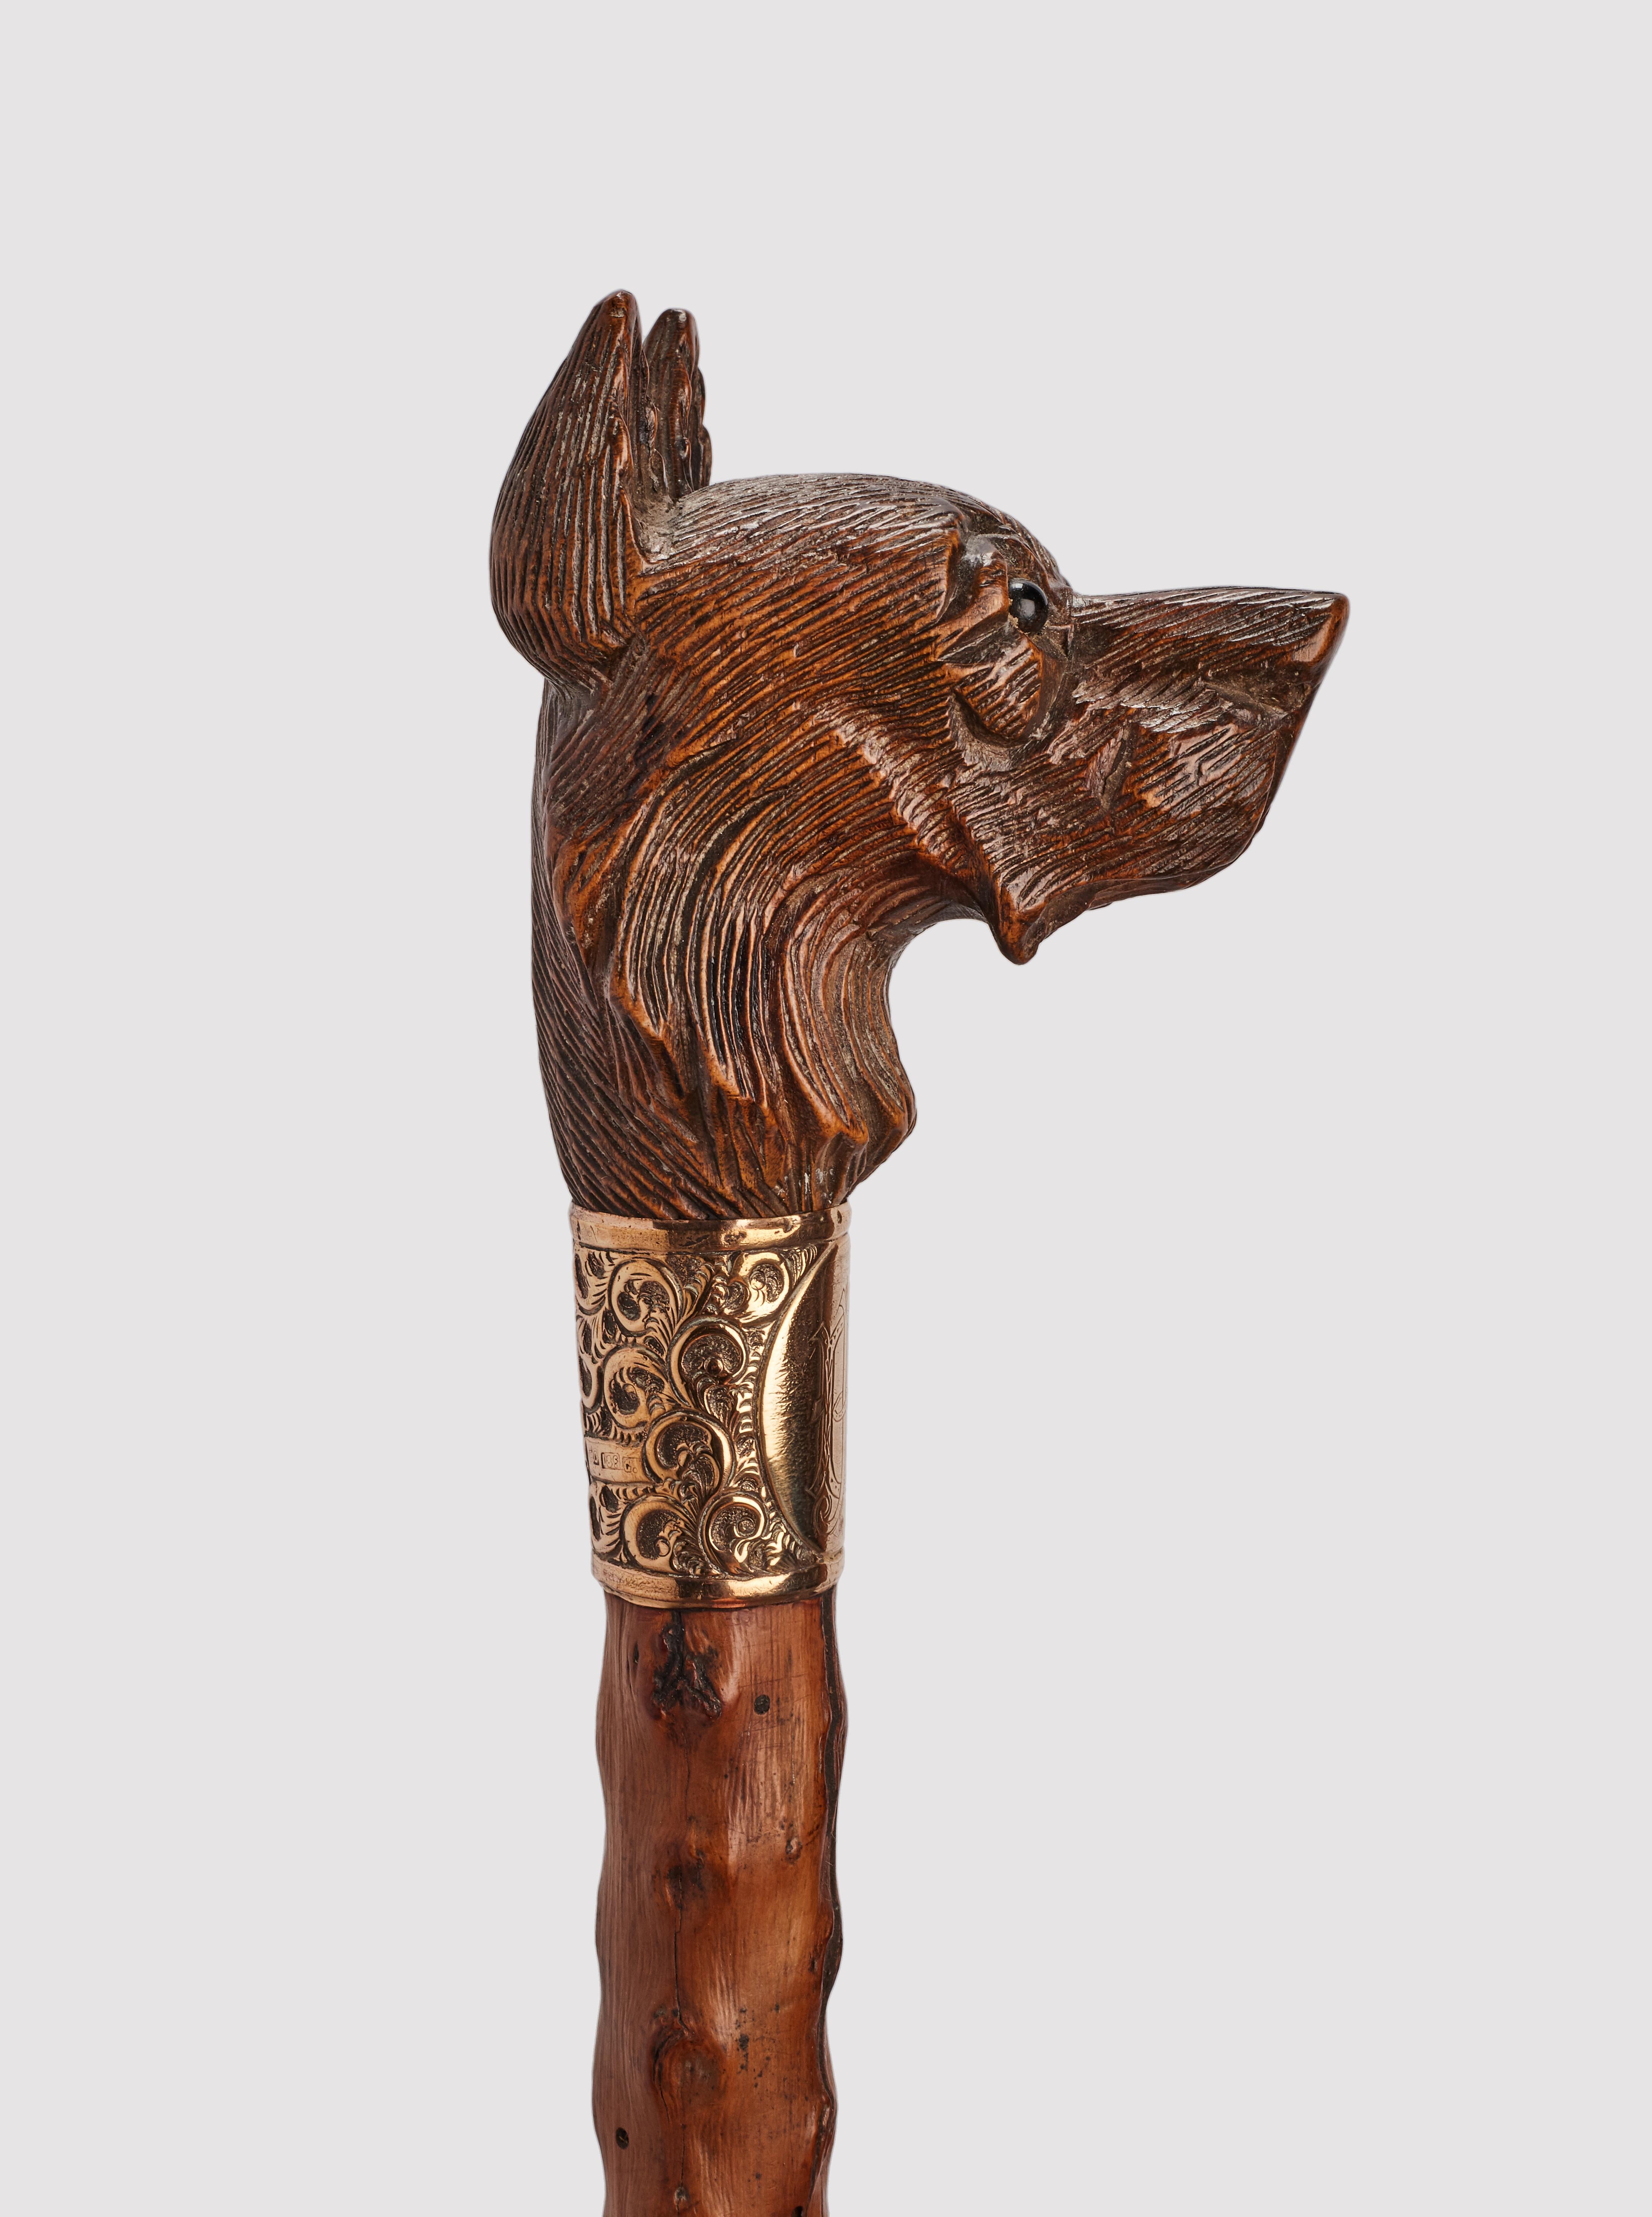 Canne d'art populaire : poignée en bois sculpté représentant une tête de chien de berger allemand, yeux en verre sulfurisé. Manche en bois d'aubépine et virole en métal. Anneau en argent doré. Autriche vers 1890.